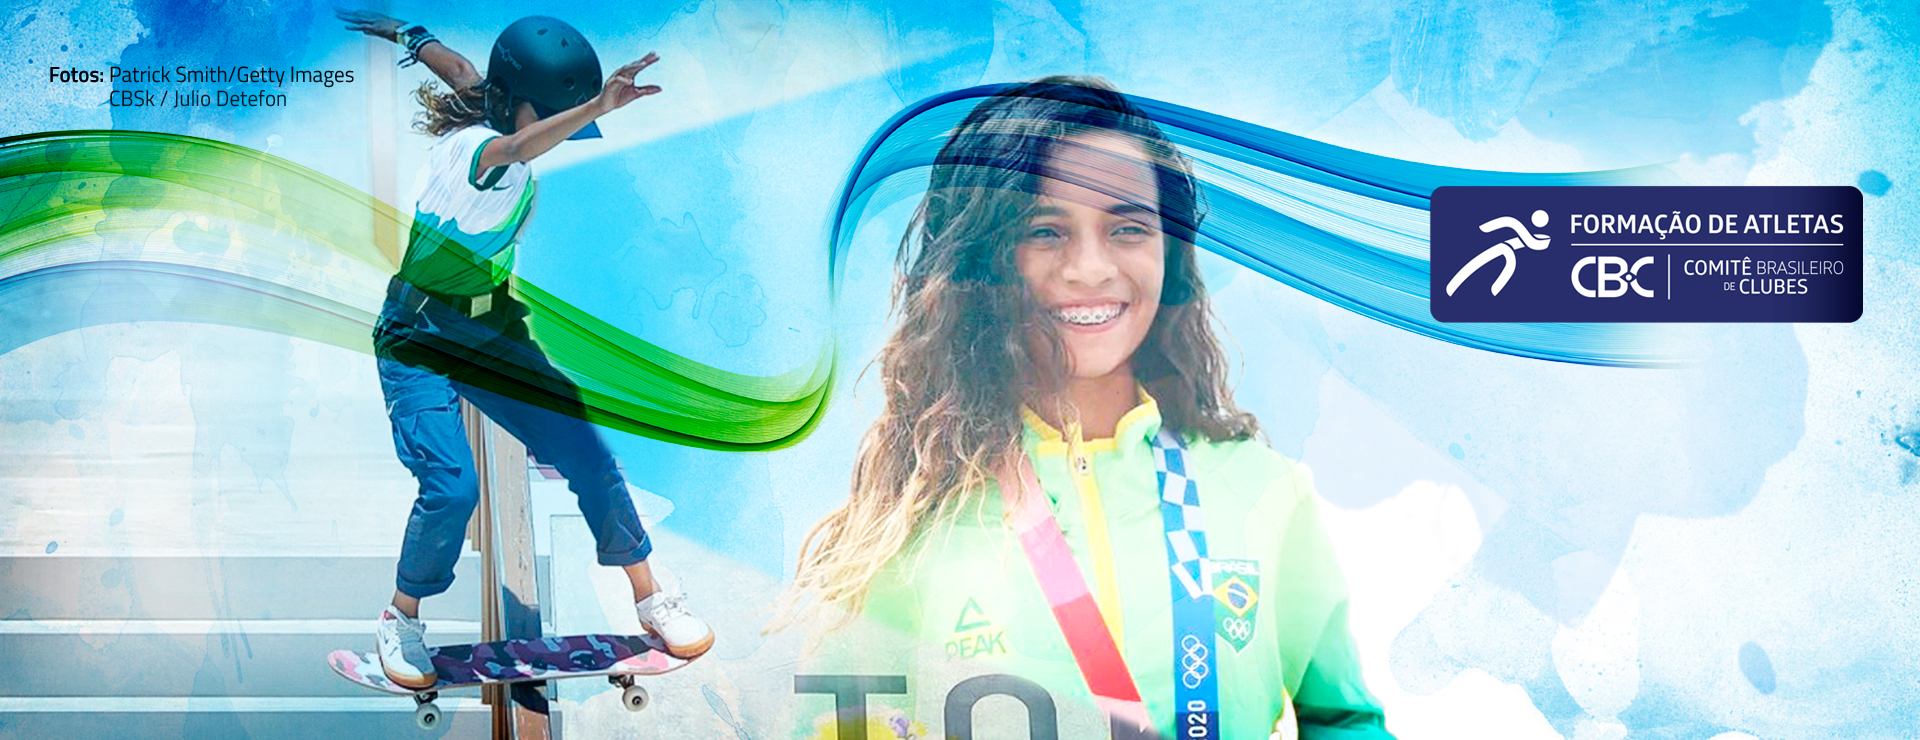 Rayssa Leal, atleta mais jovem da delegação brasileira, com 13 anos, conquista medalha de prata para o Brasil no Skate Street nos Jogos Olímpicos de Tóquio